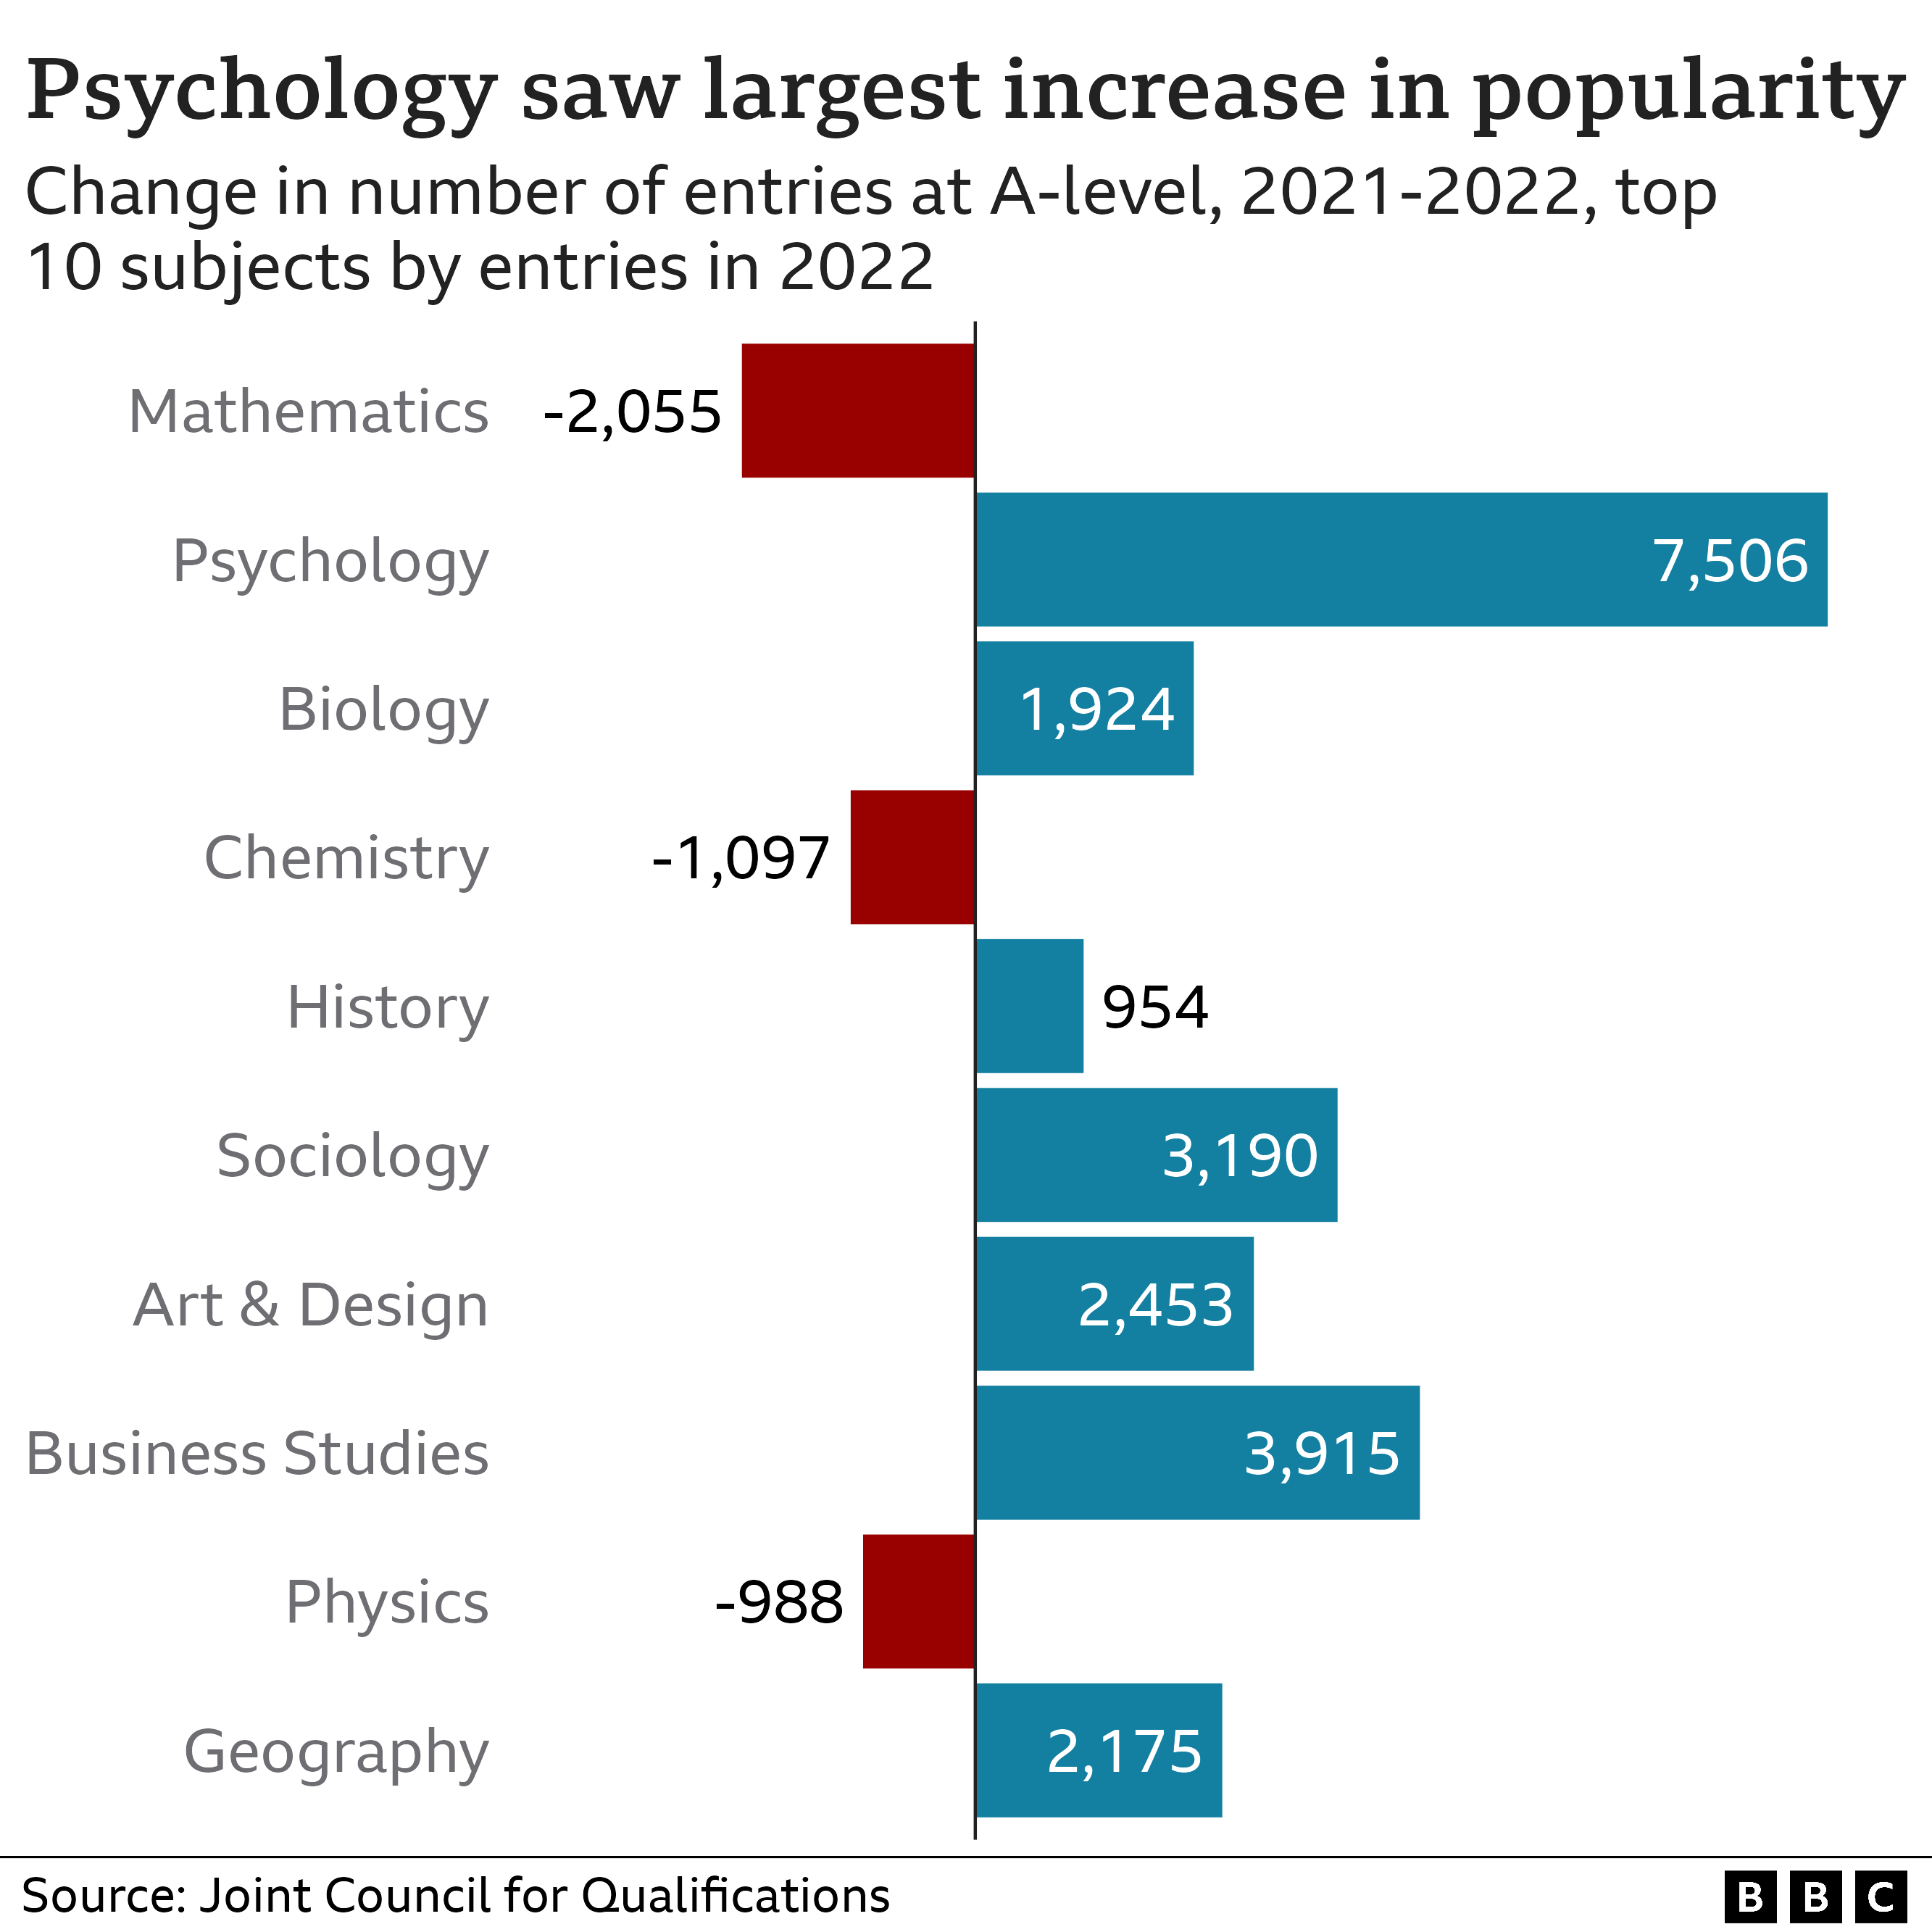 Диаграмма, показывающая, как психология добилась наибольшего роста популярности